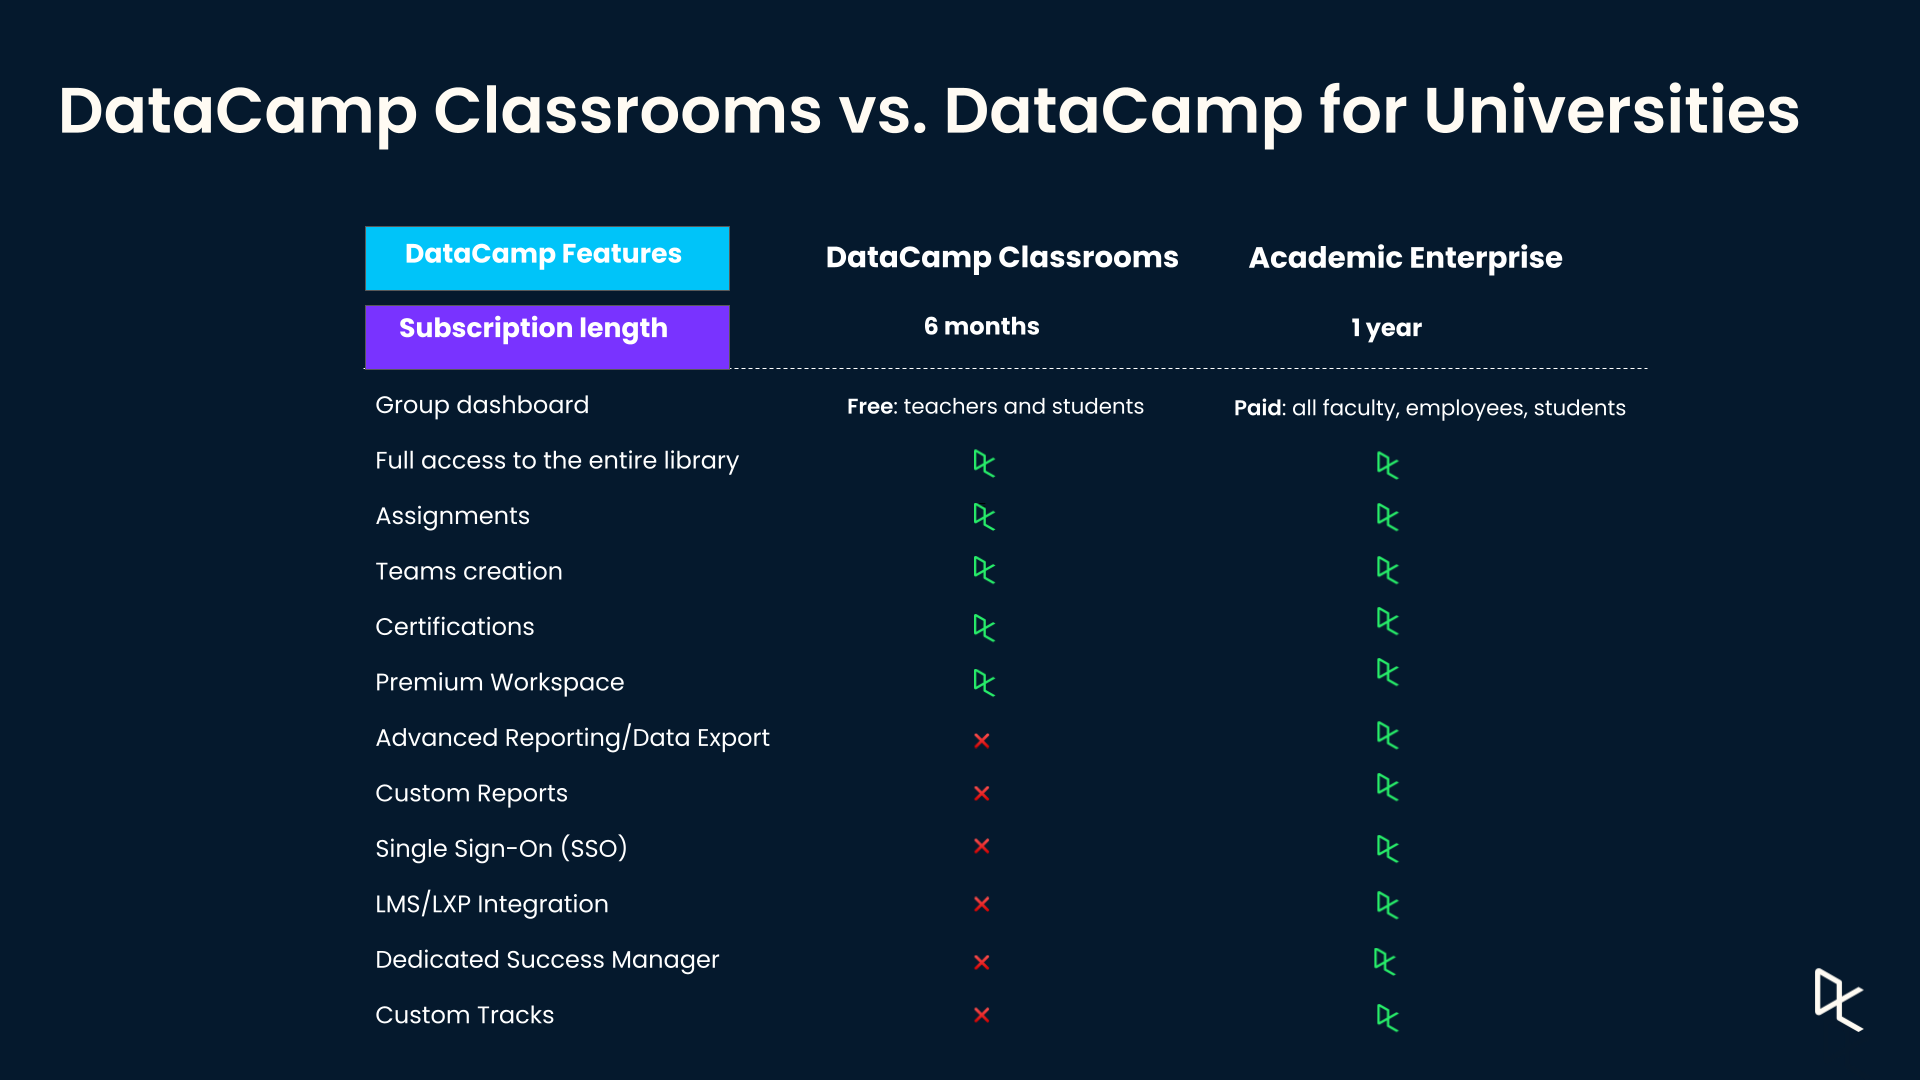 DataCamp Classrooms vs Universities